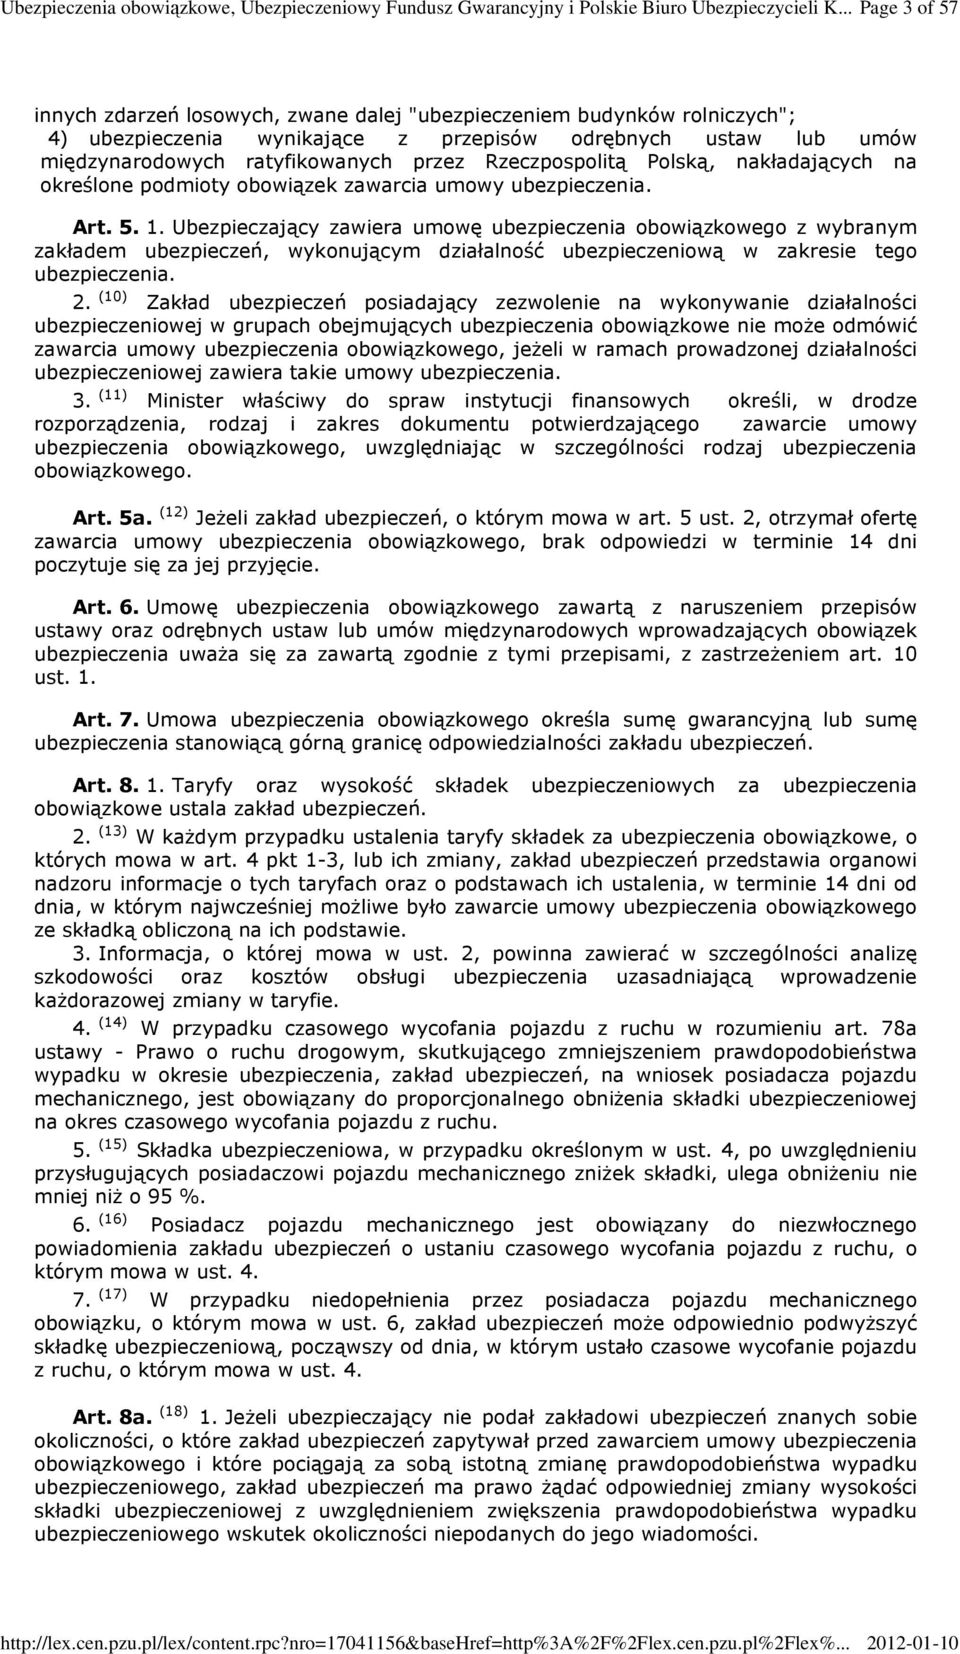 Rzeczpospolitą Polską, nakładających na określone podmioty obowiązek zawarcia umowy ubezpieczenia. Art. 5. 1.